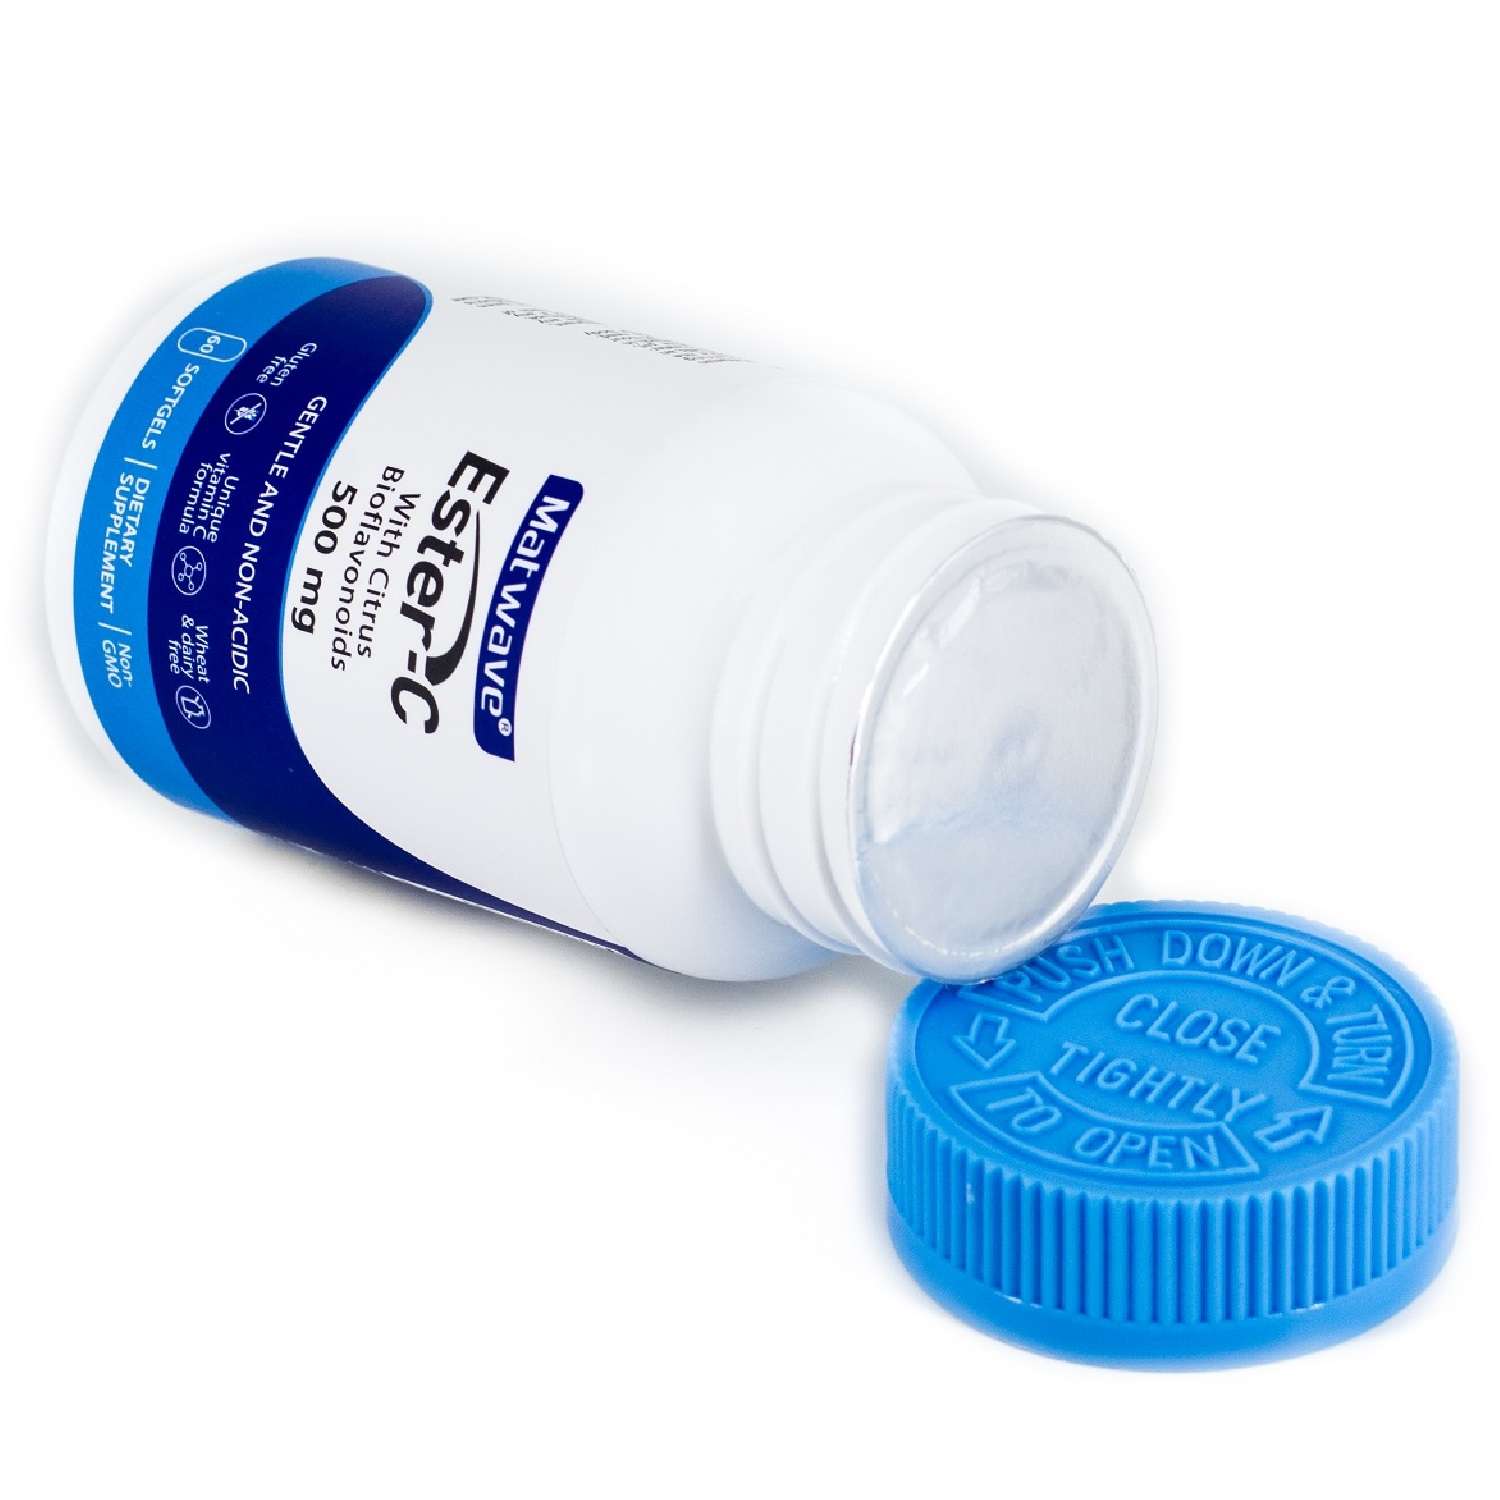 Витамин С Matwave Ester-C Эстер С 500 mg 60 капсул комплект 3 упаковки - фото 12